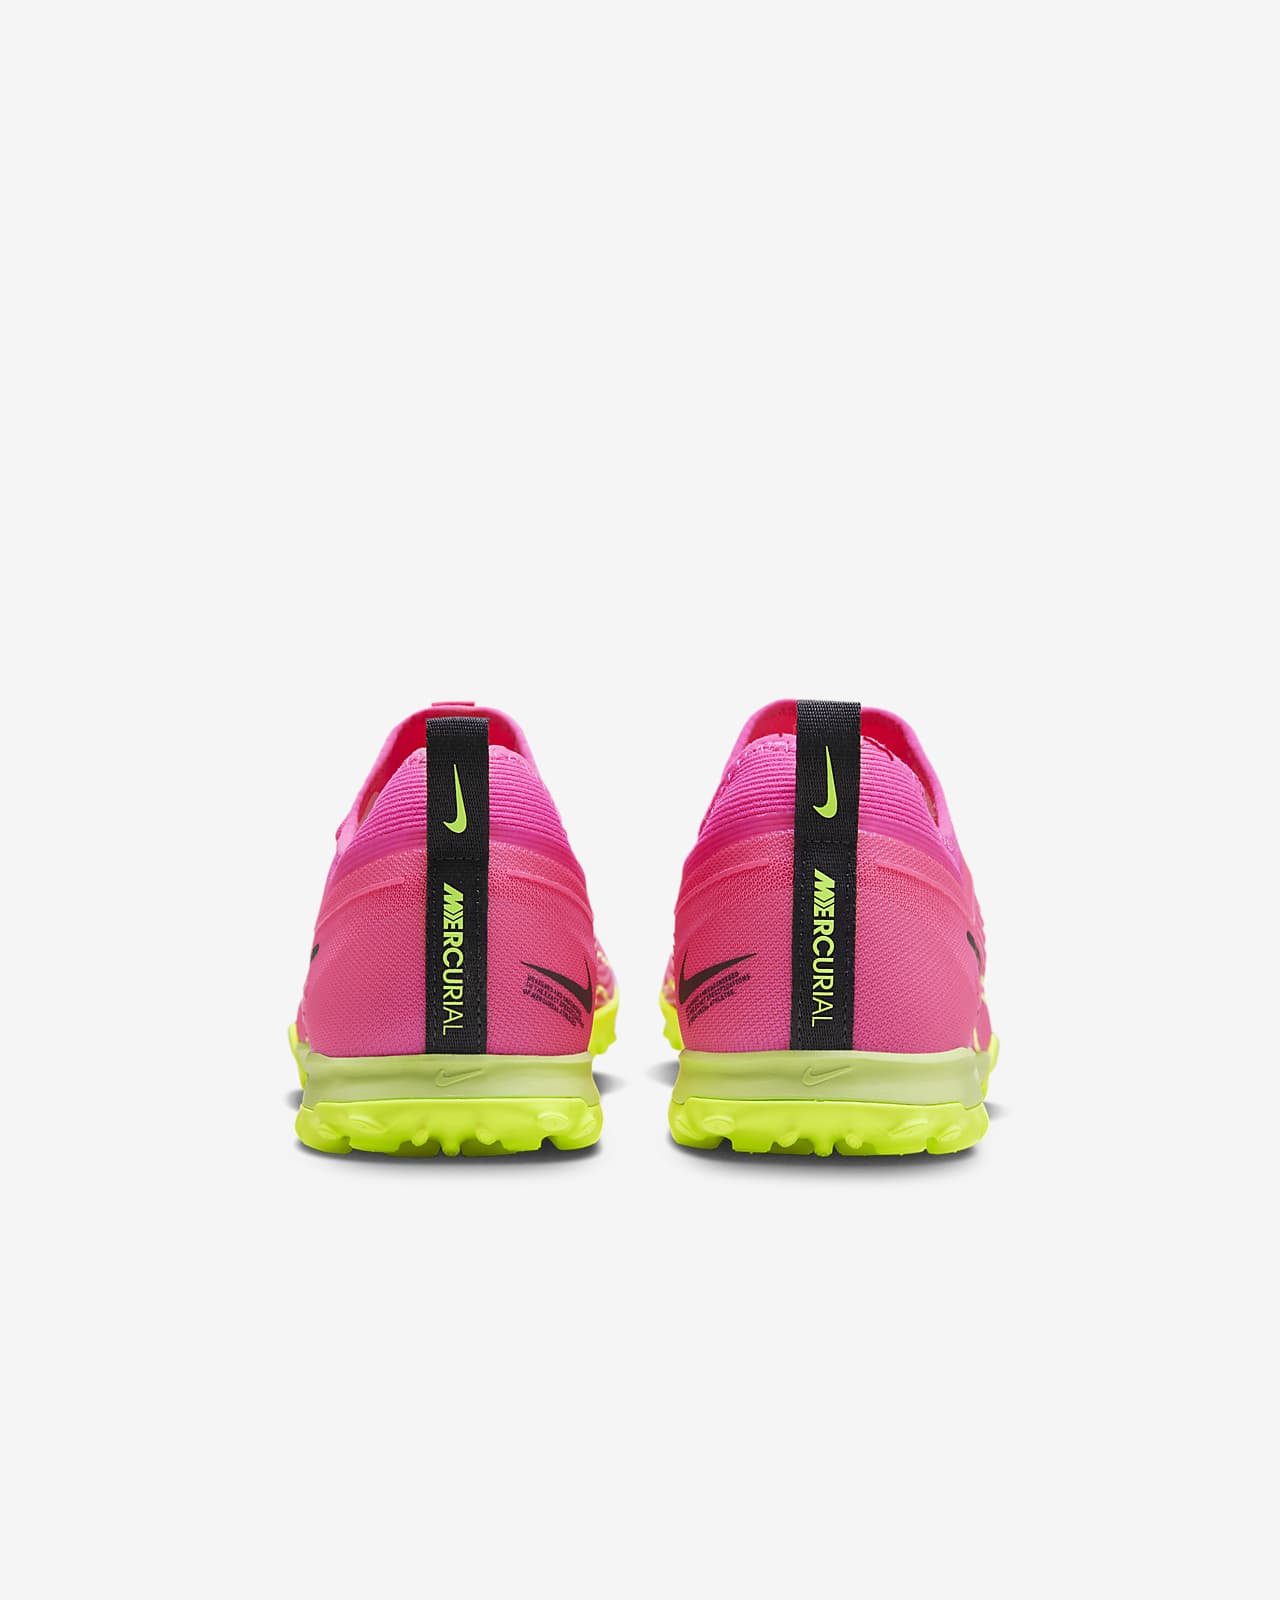 tuberculosis Formular hambruna Nike Mercurial Vapor 15 Pro Turf Soccer Shoes. Nike JP